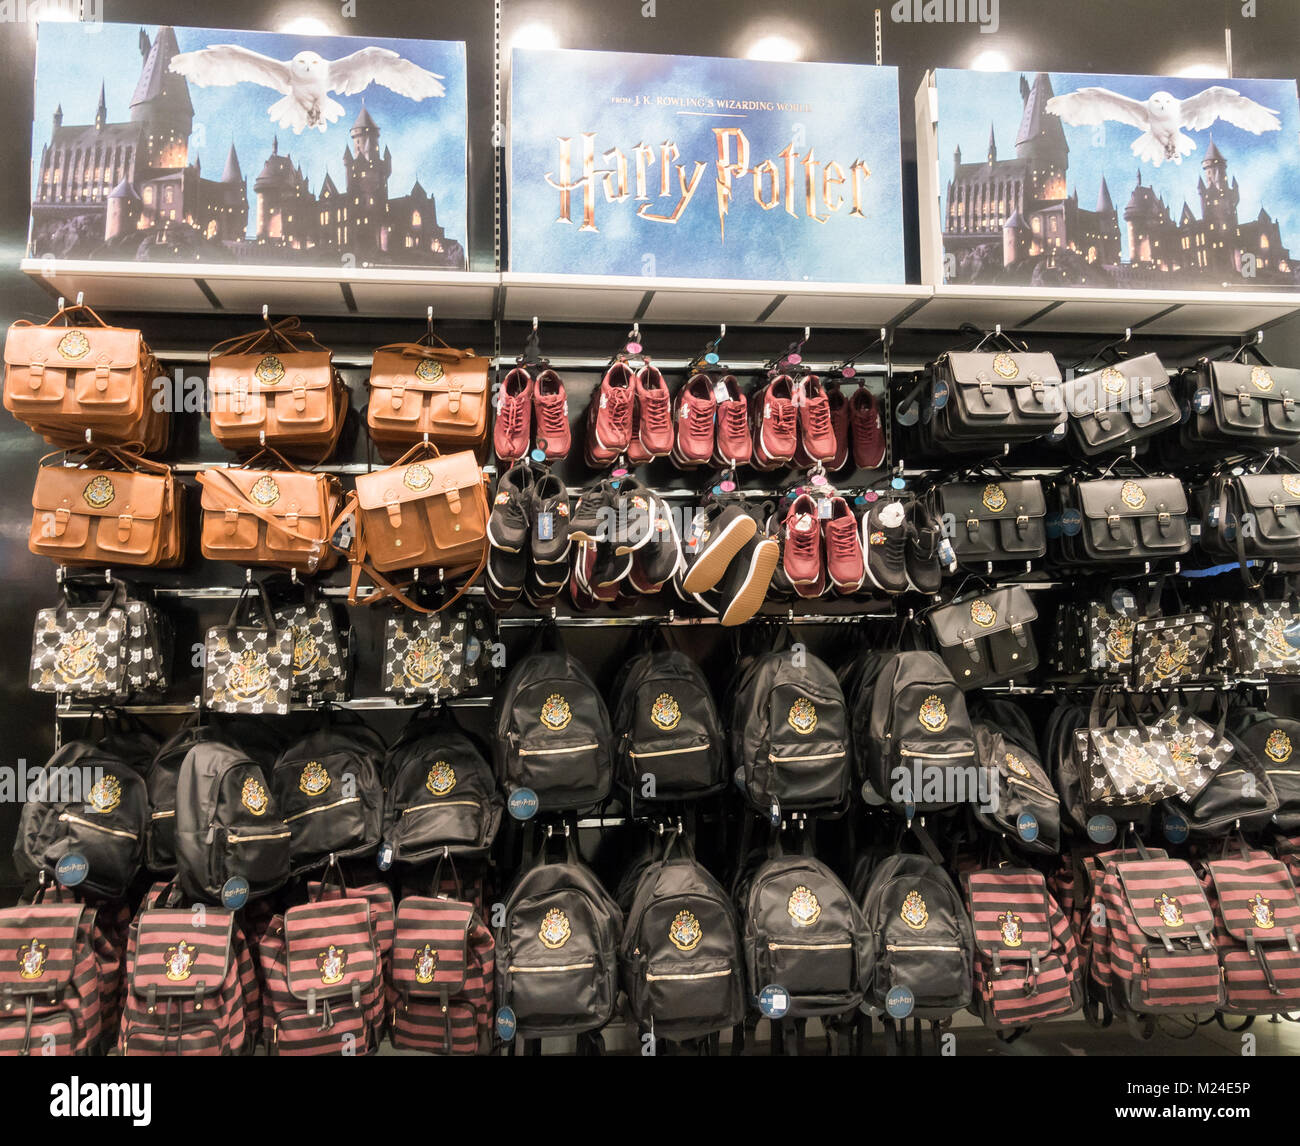 Harry Potter merchandising in Primark store in Spain Stock Photo